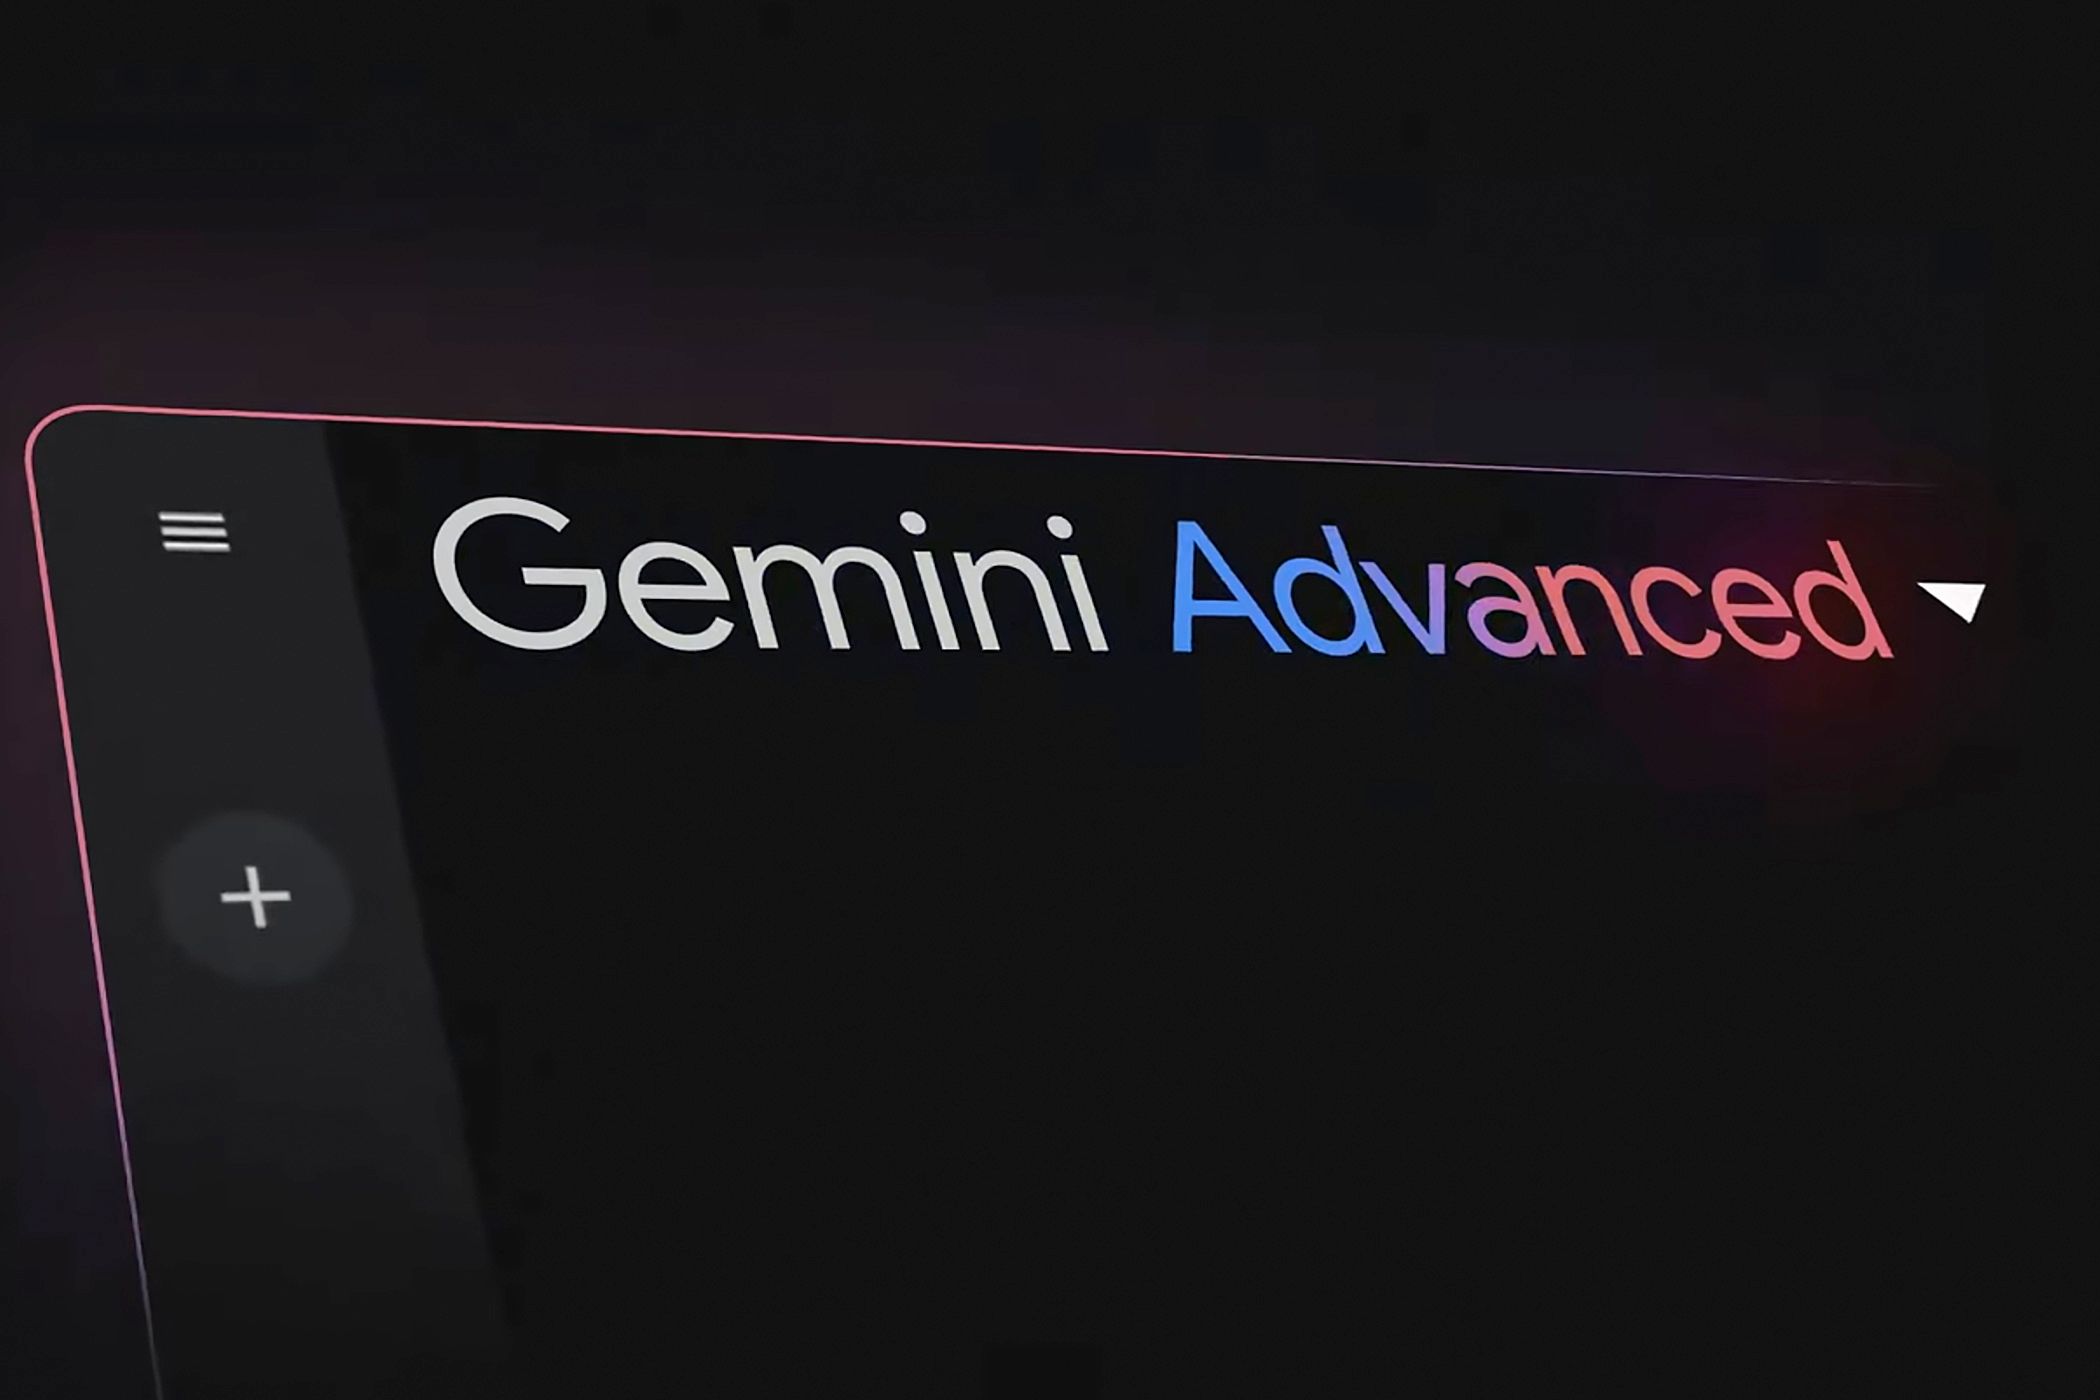 An illustration of the Google Gemini AI.